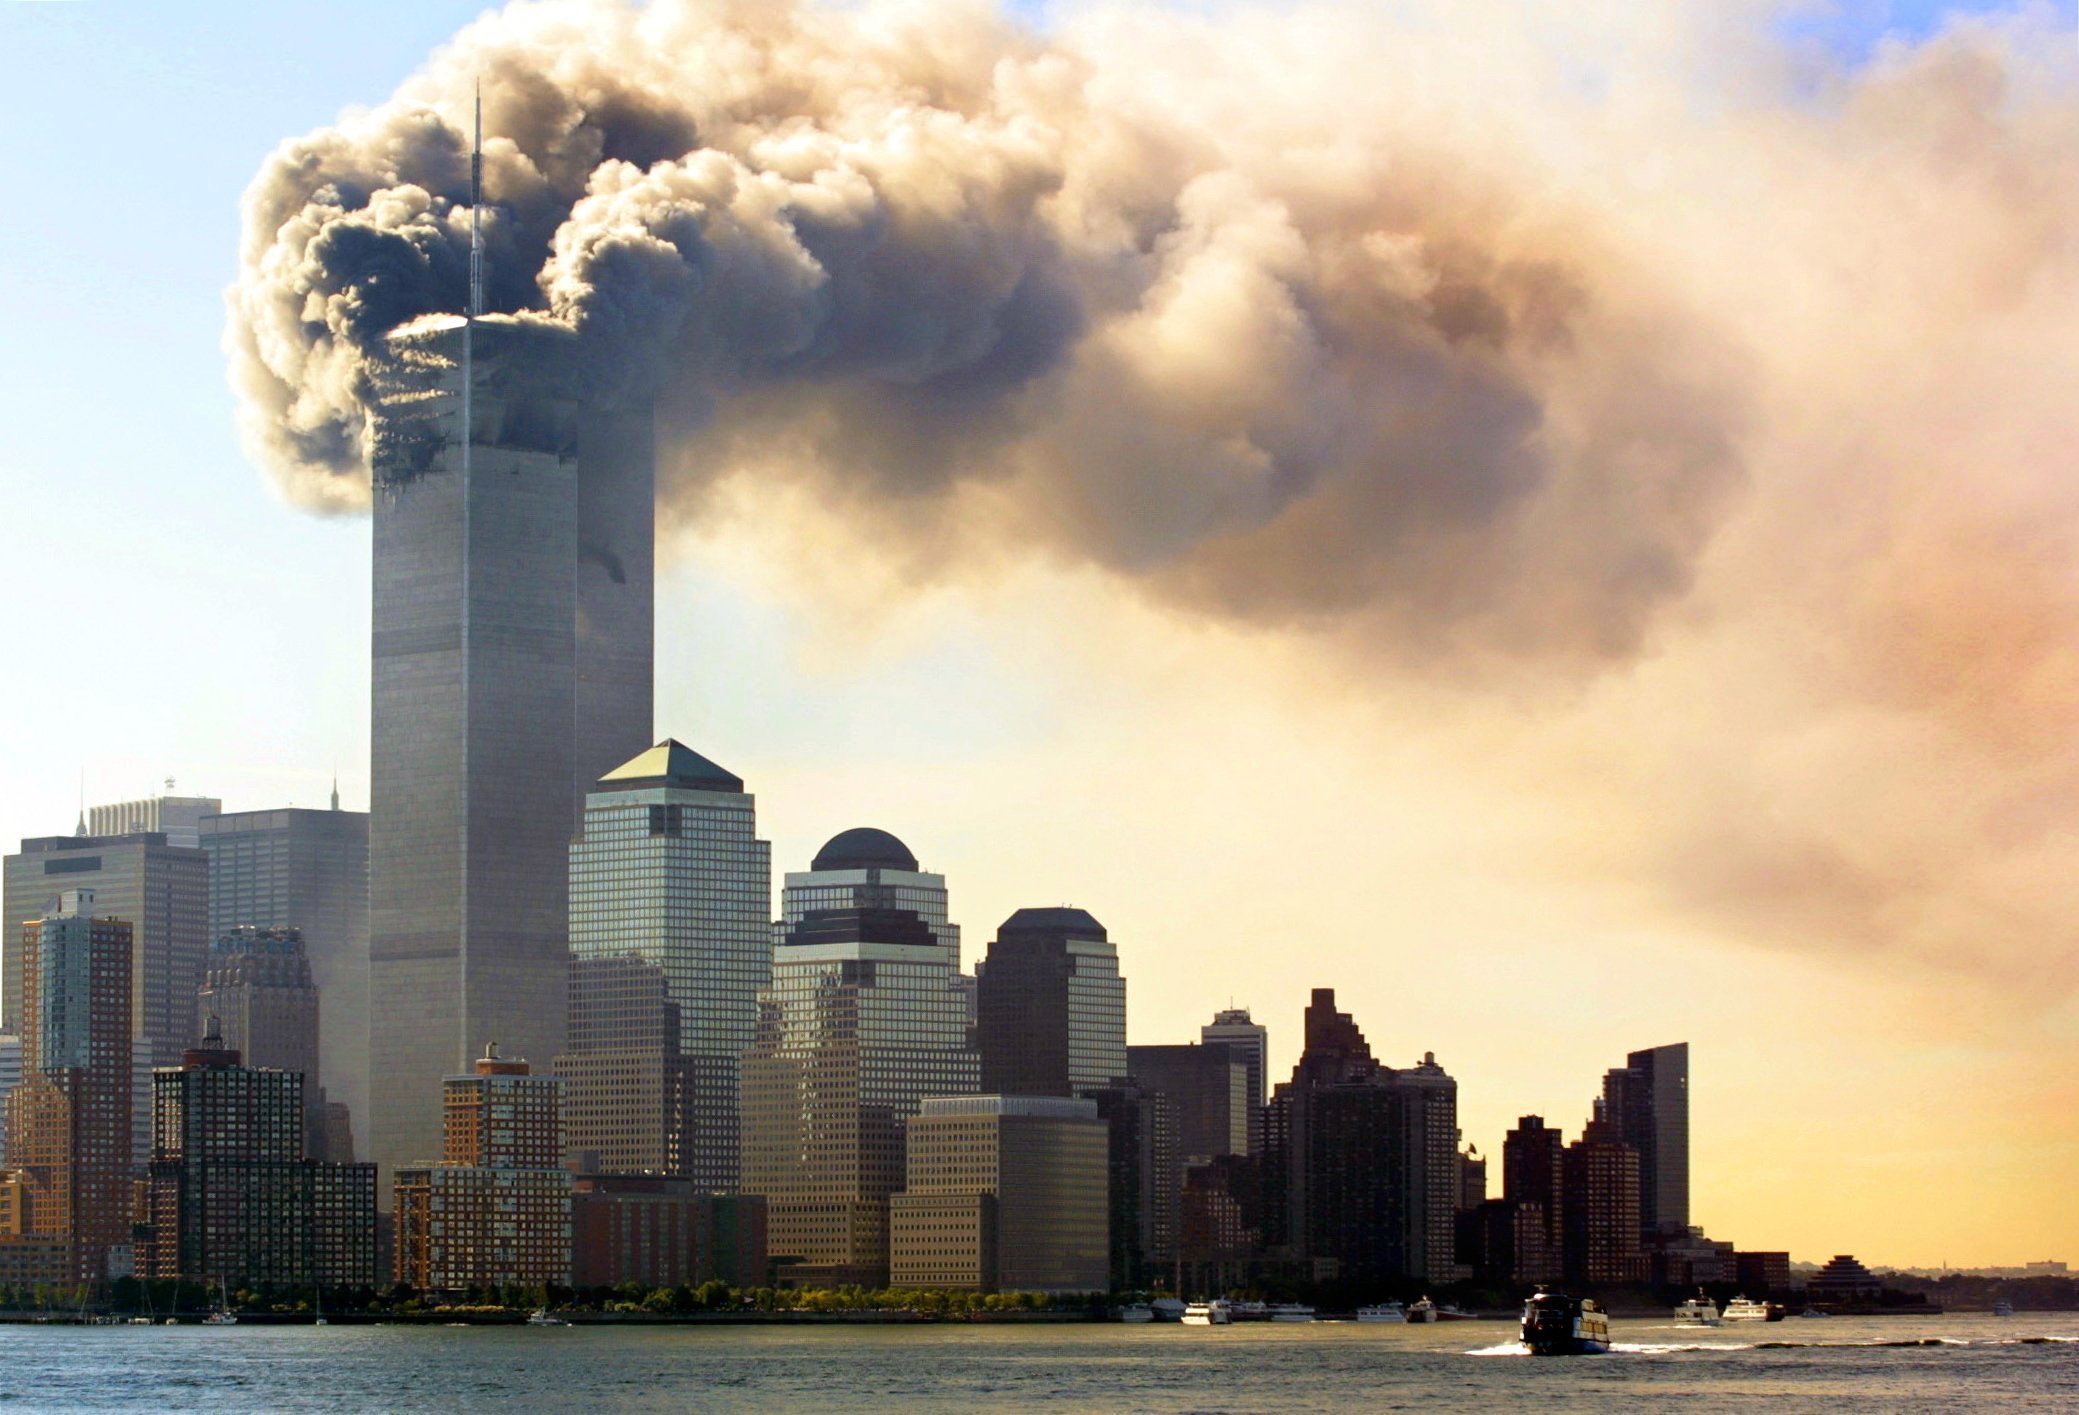 Незапланированный таран: Американские СМИ рассказали неизвестные подробности о терактах 11 сентября